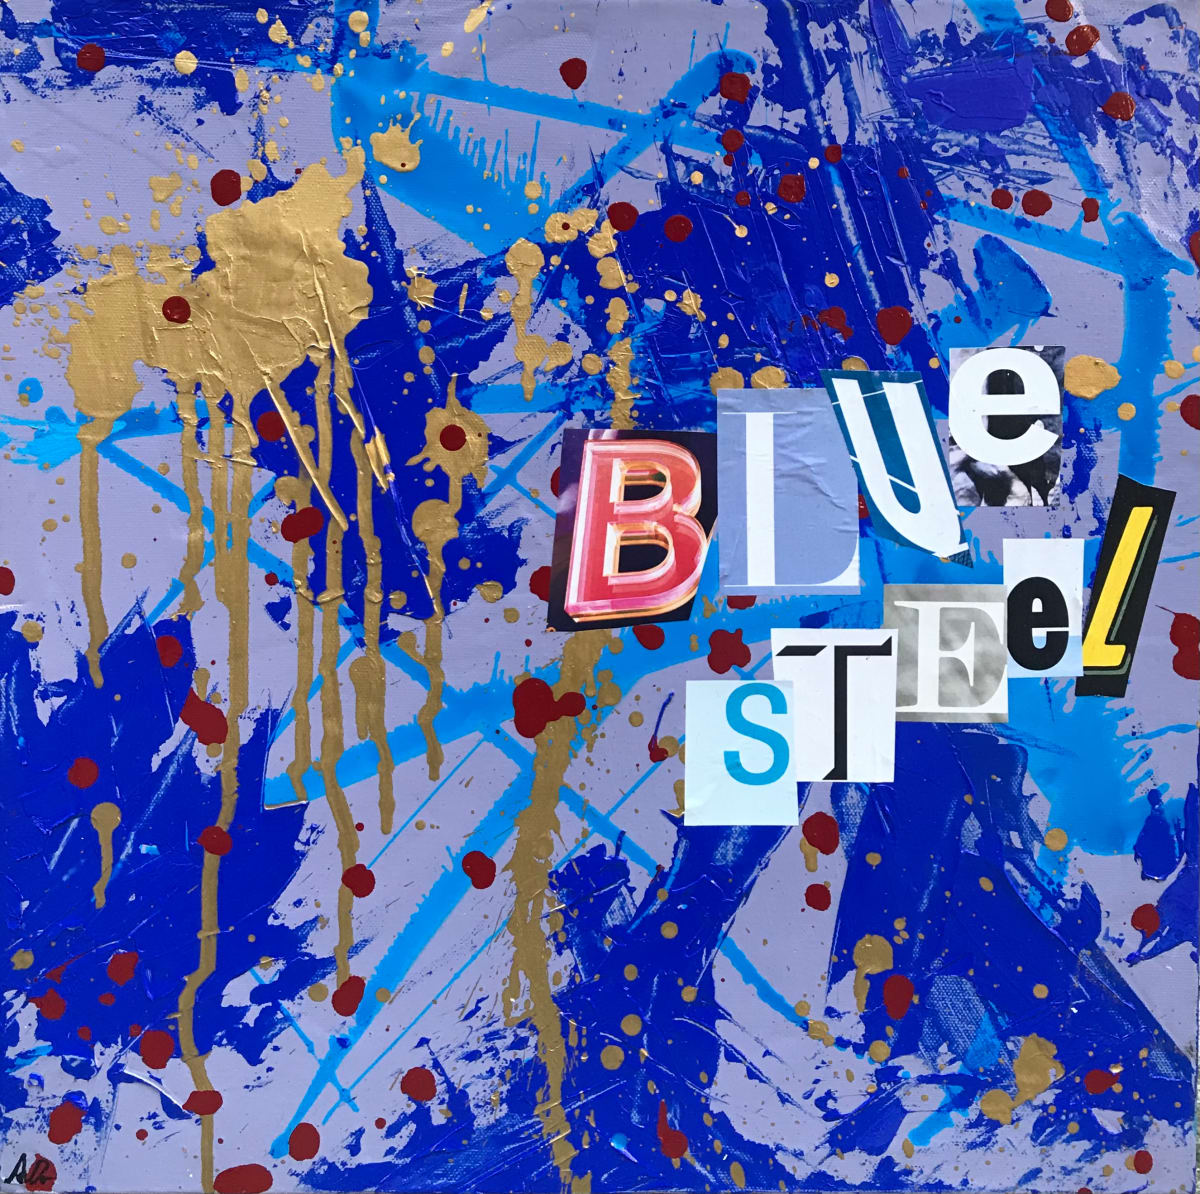 BLUE STEEL 